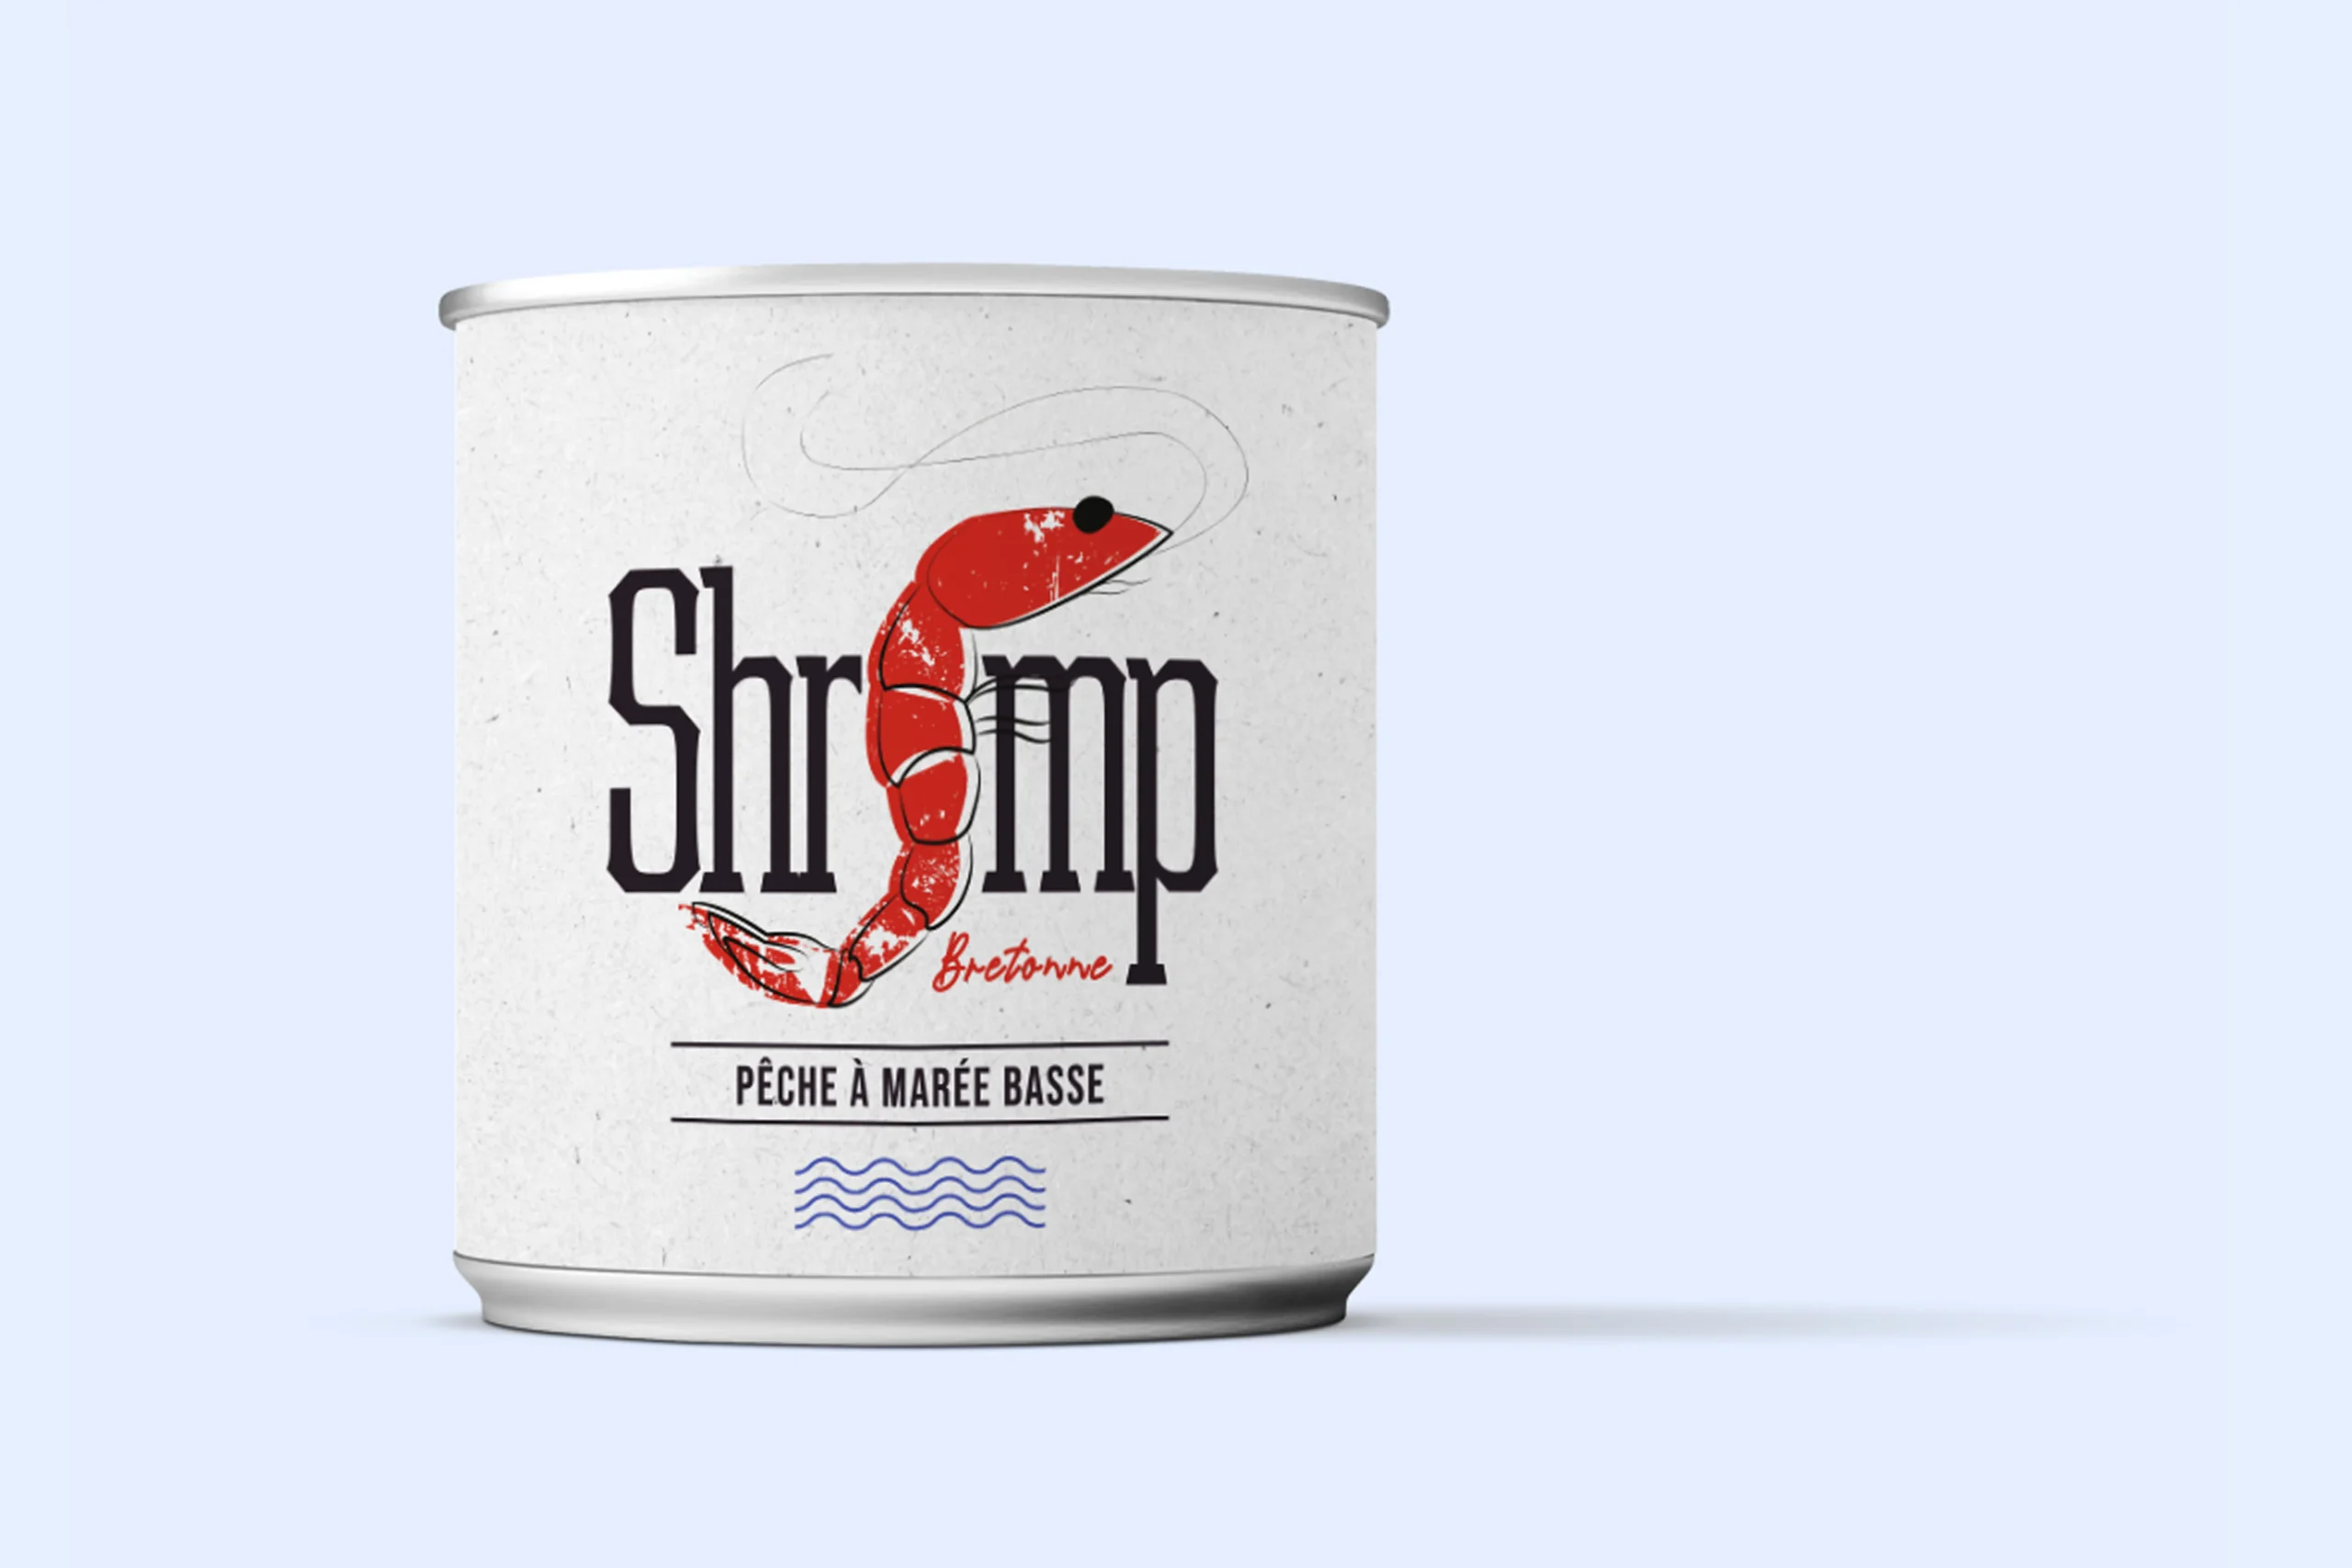 Shrimp – Identité Visuelle